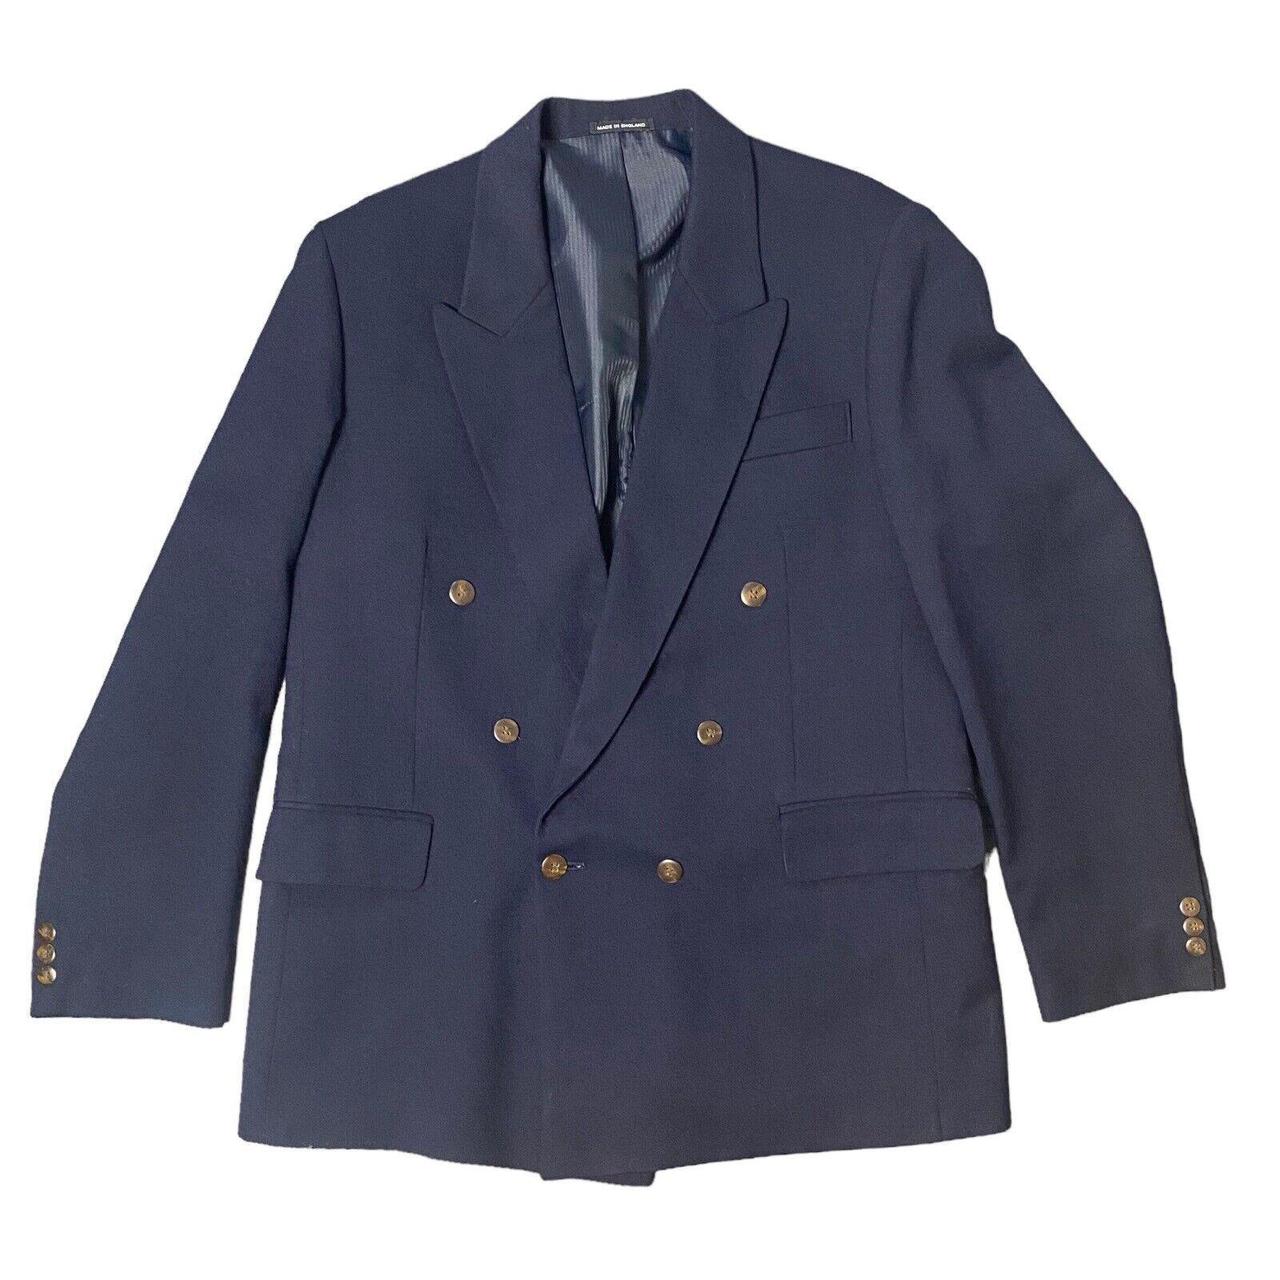 Navy vintage wool blazer Blazer jacket... - Depop